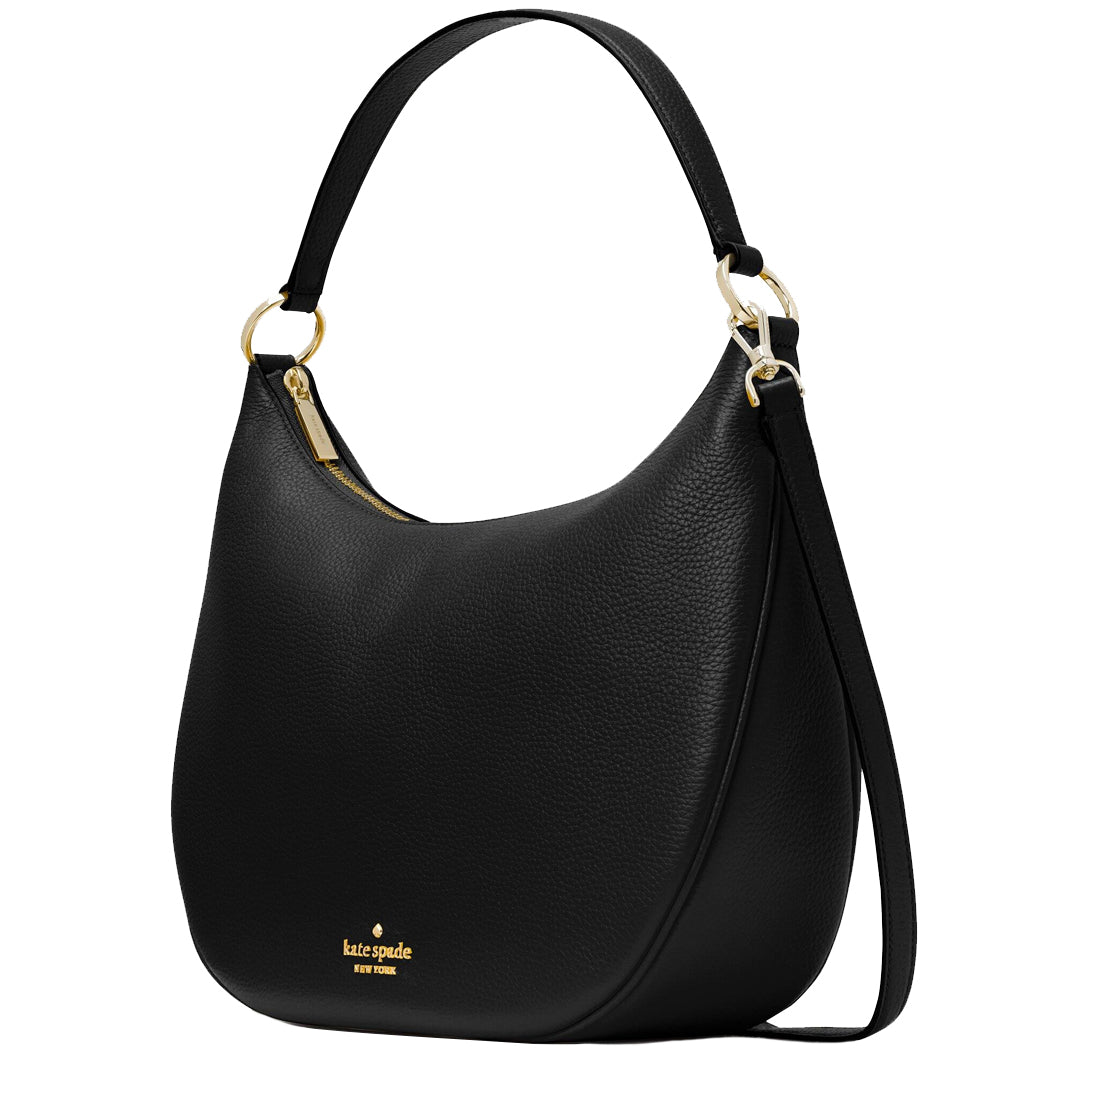 Buy Kate Spade Weston Shoulder Bag in Black K8453 Online in Singapore ...